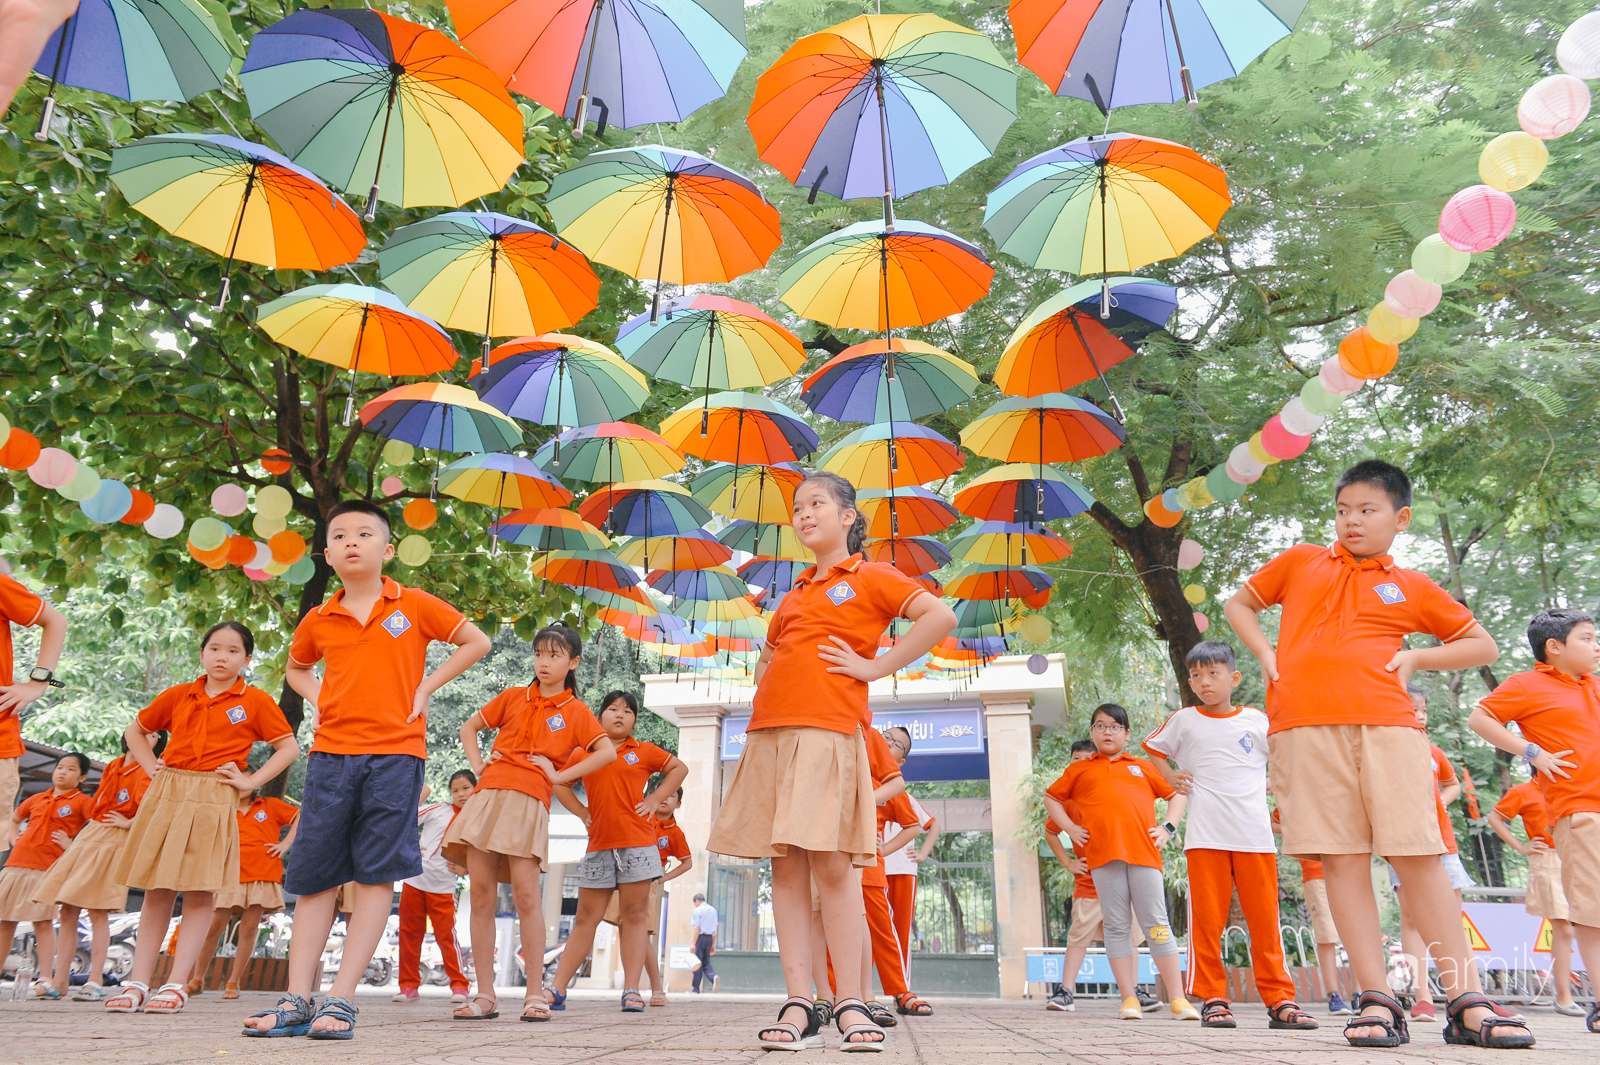 Trường tiểu học ở Hà Nội trang trí nổi bật cả vùng trời, học sinh phấn khích như đi hội, ai đi ngang qua cũng phải ngước nhìn-7